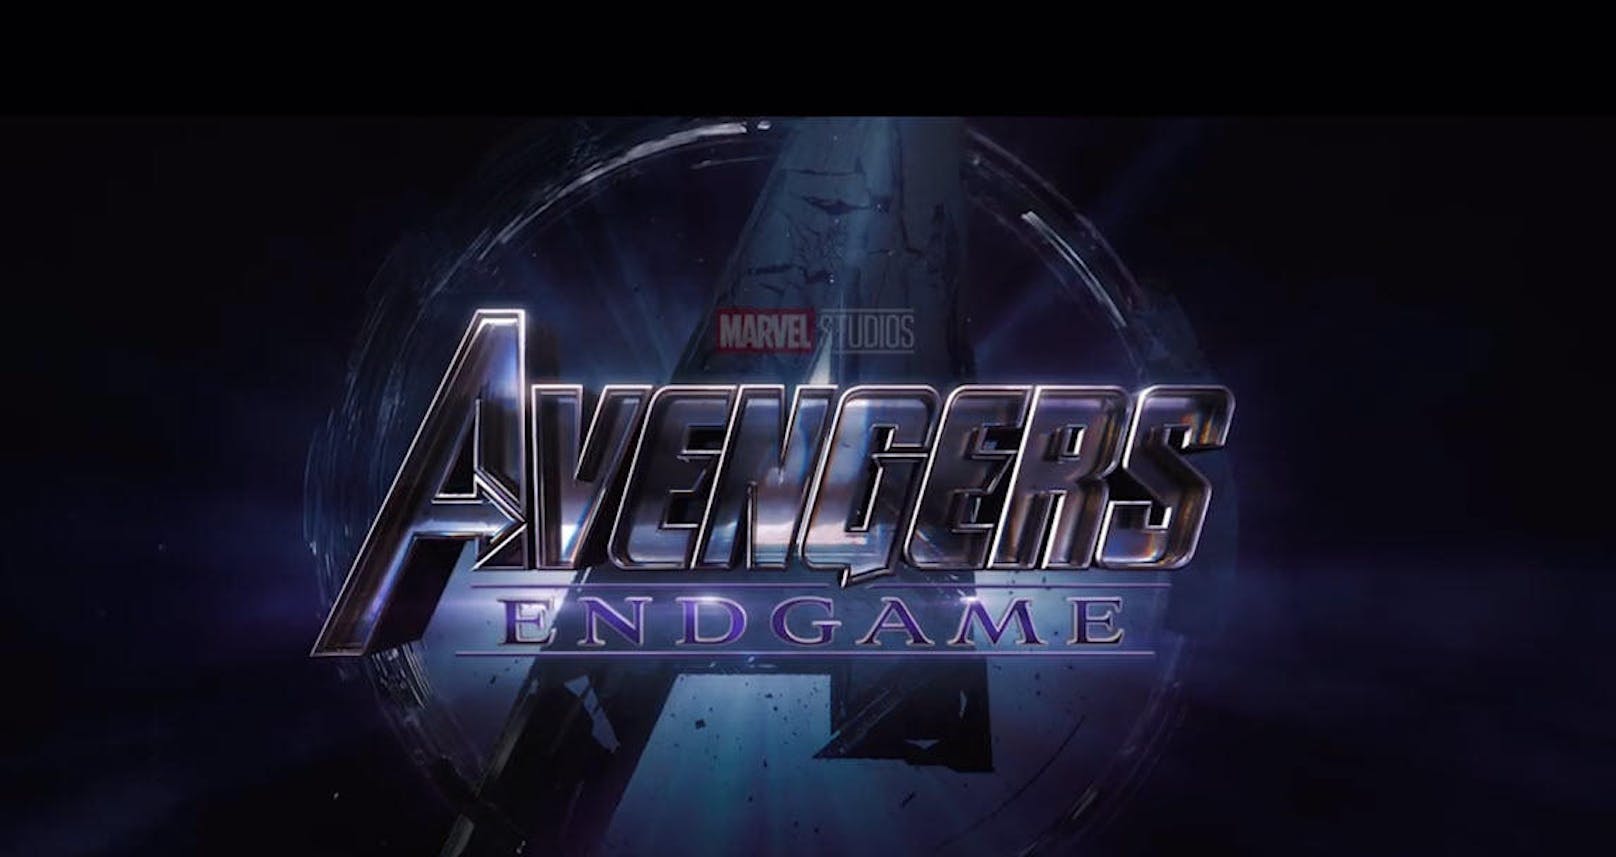 Dass sich der "Avengers"-Schriftzug am Ende des Trailers aus diversen Bröseln und Staubkörnern wieder zusammensetzt ist ein gutes Zeichen dafür, dass die von Thanos ausgelöschten Helden zurückkehren werden.